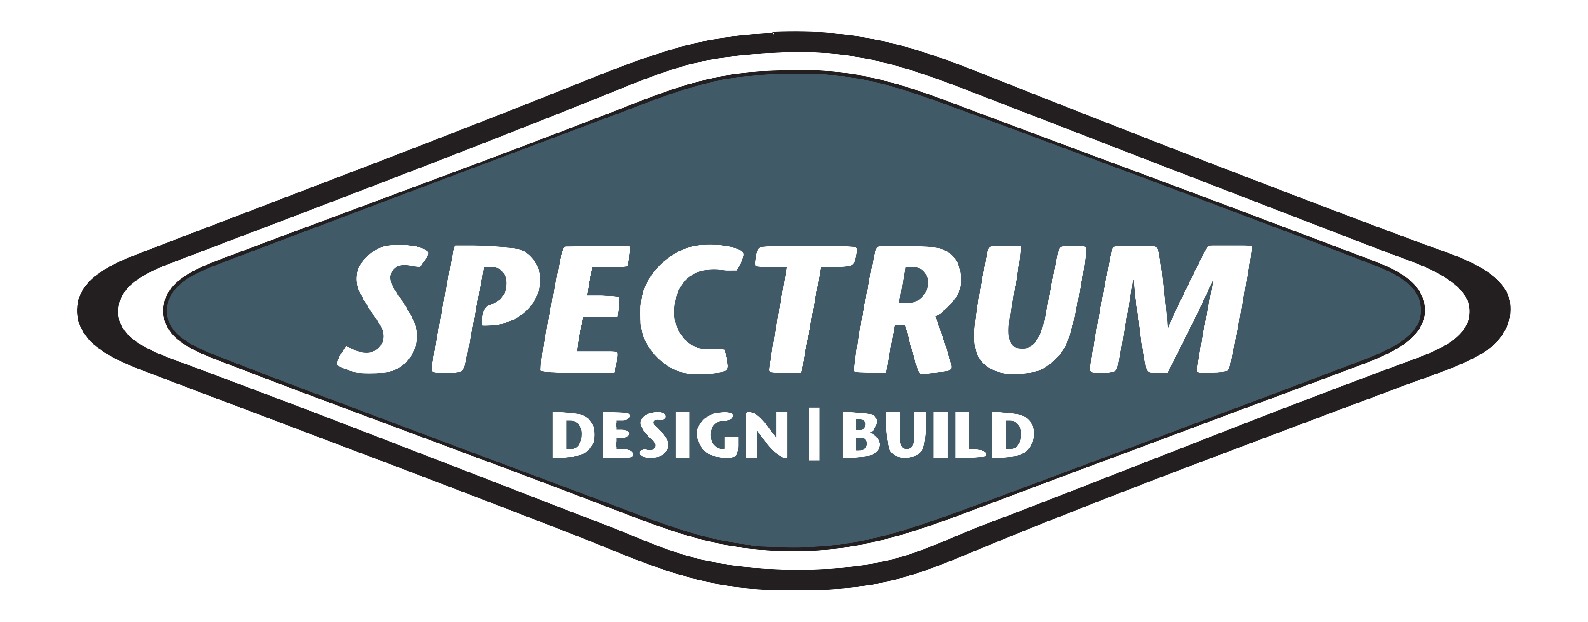 SpectrumDesignBuild_Logo-01